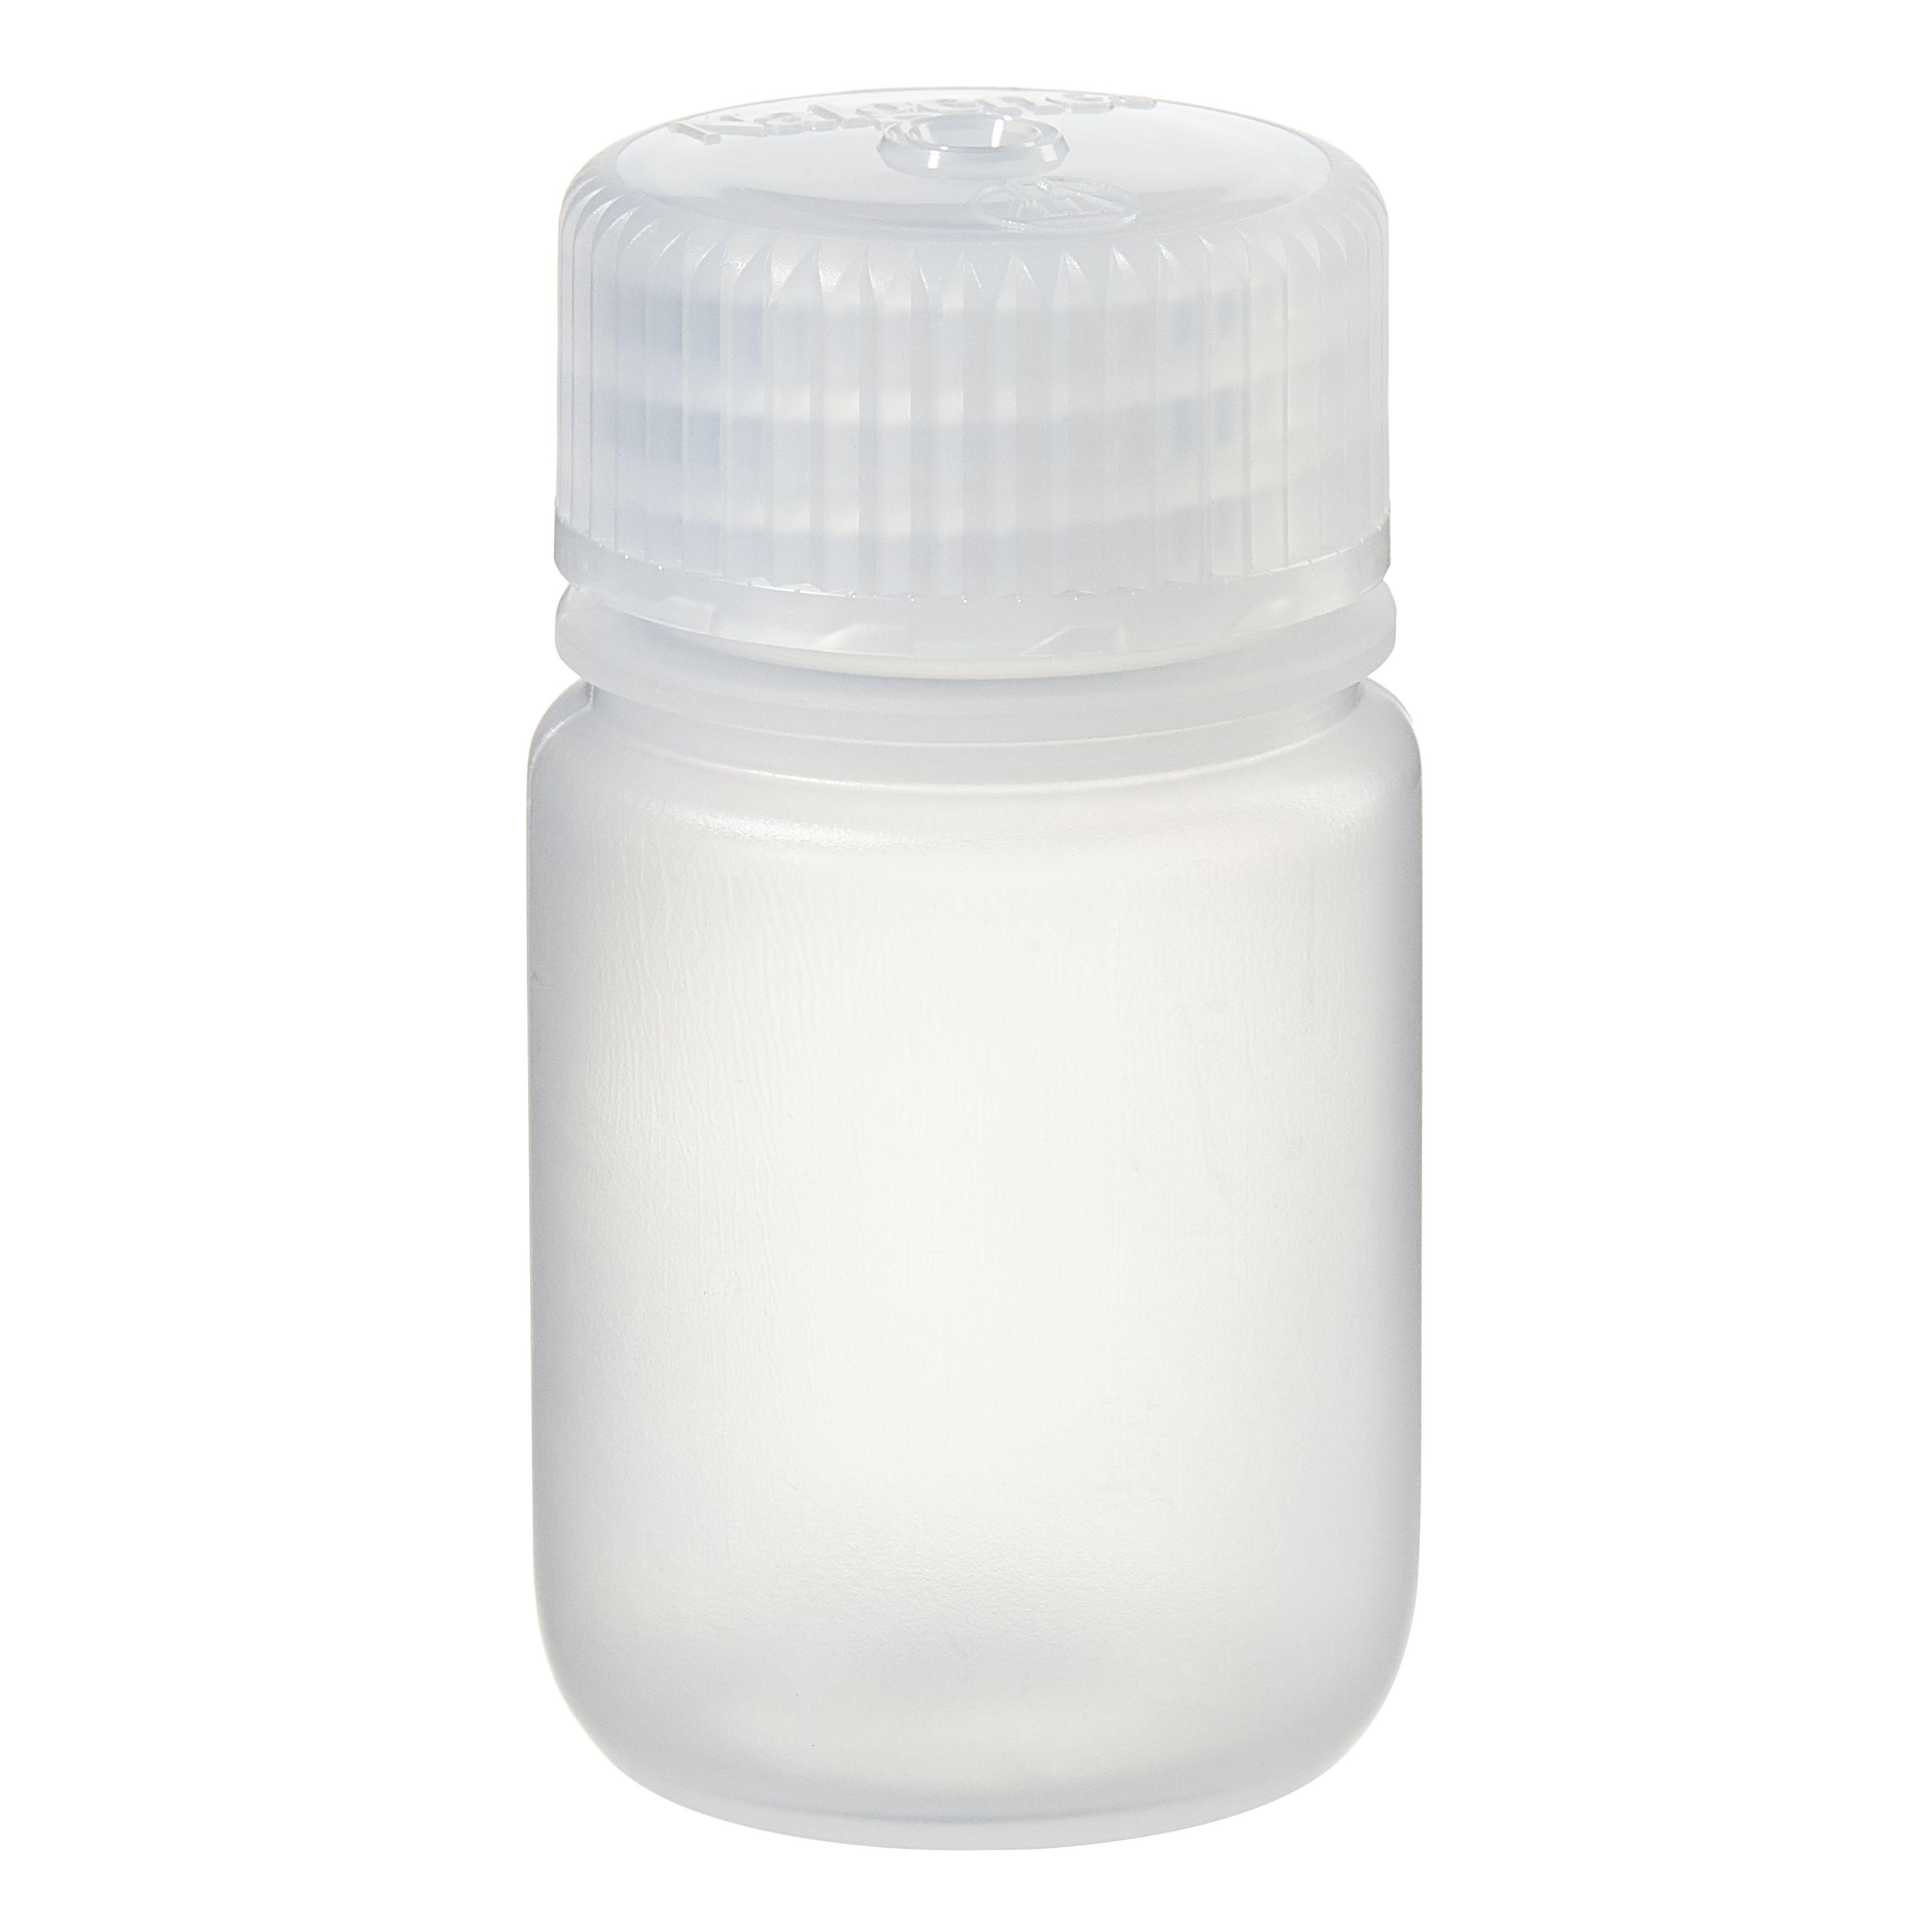 [Thermo Nalgene] 2105-0001 / 30mL Nalgene Wide-Mouth Lab Quality PPCO Bottle